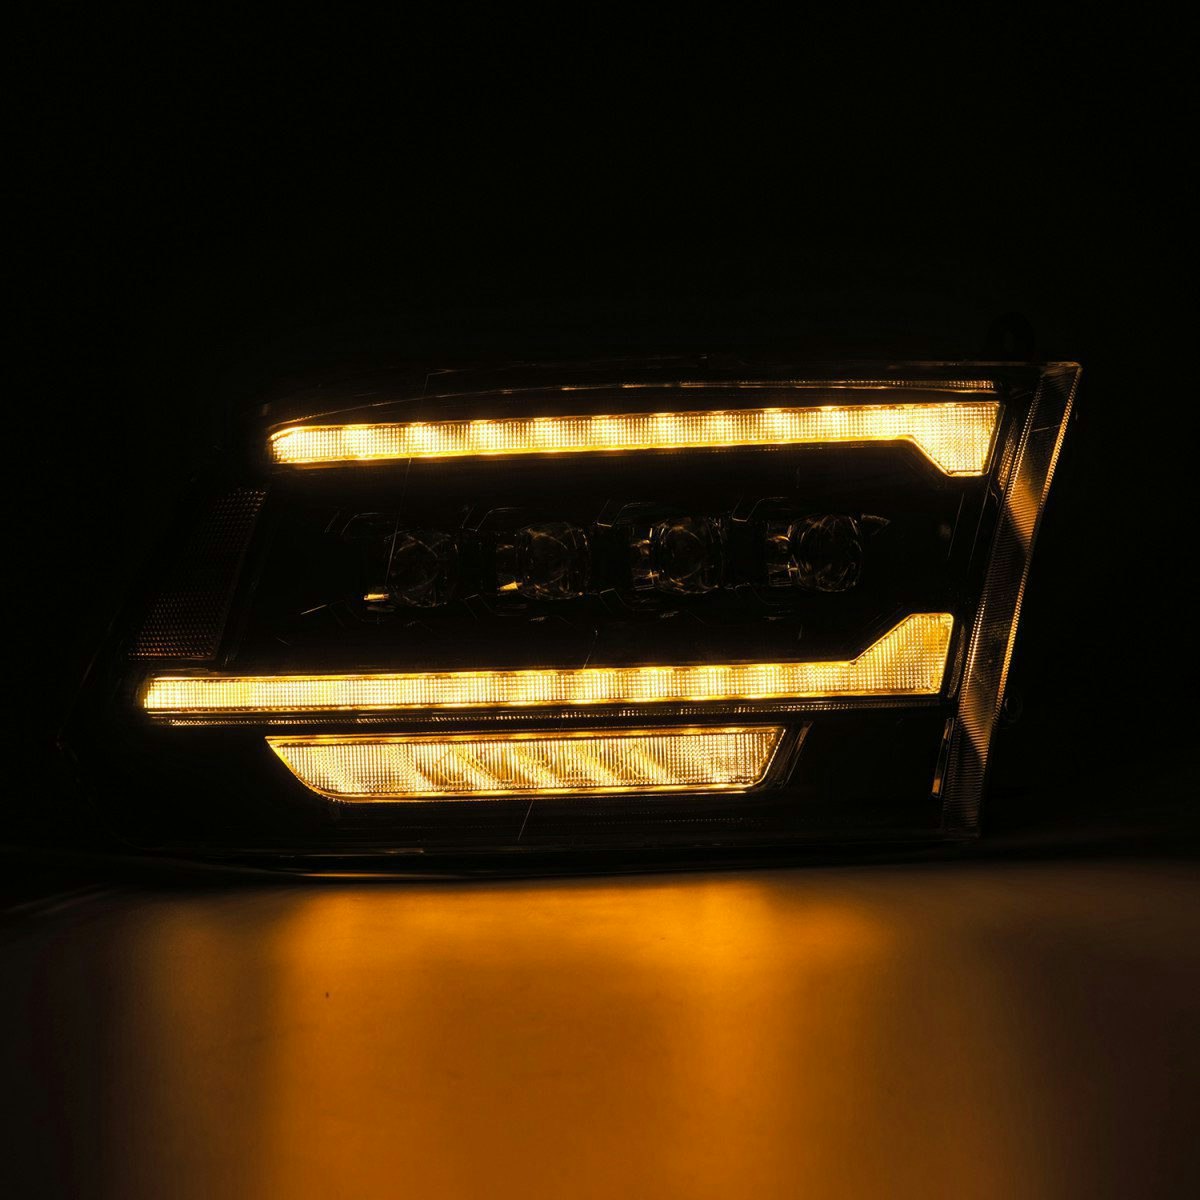 Alpharex 09-18 Ram Truck NOVA-Series LED Projector Headlights